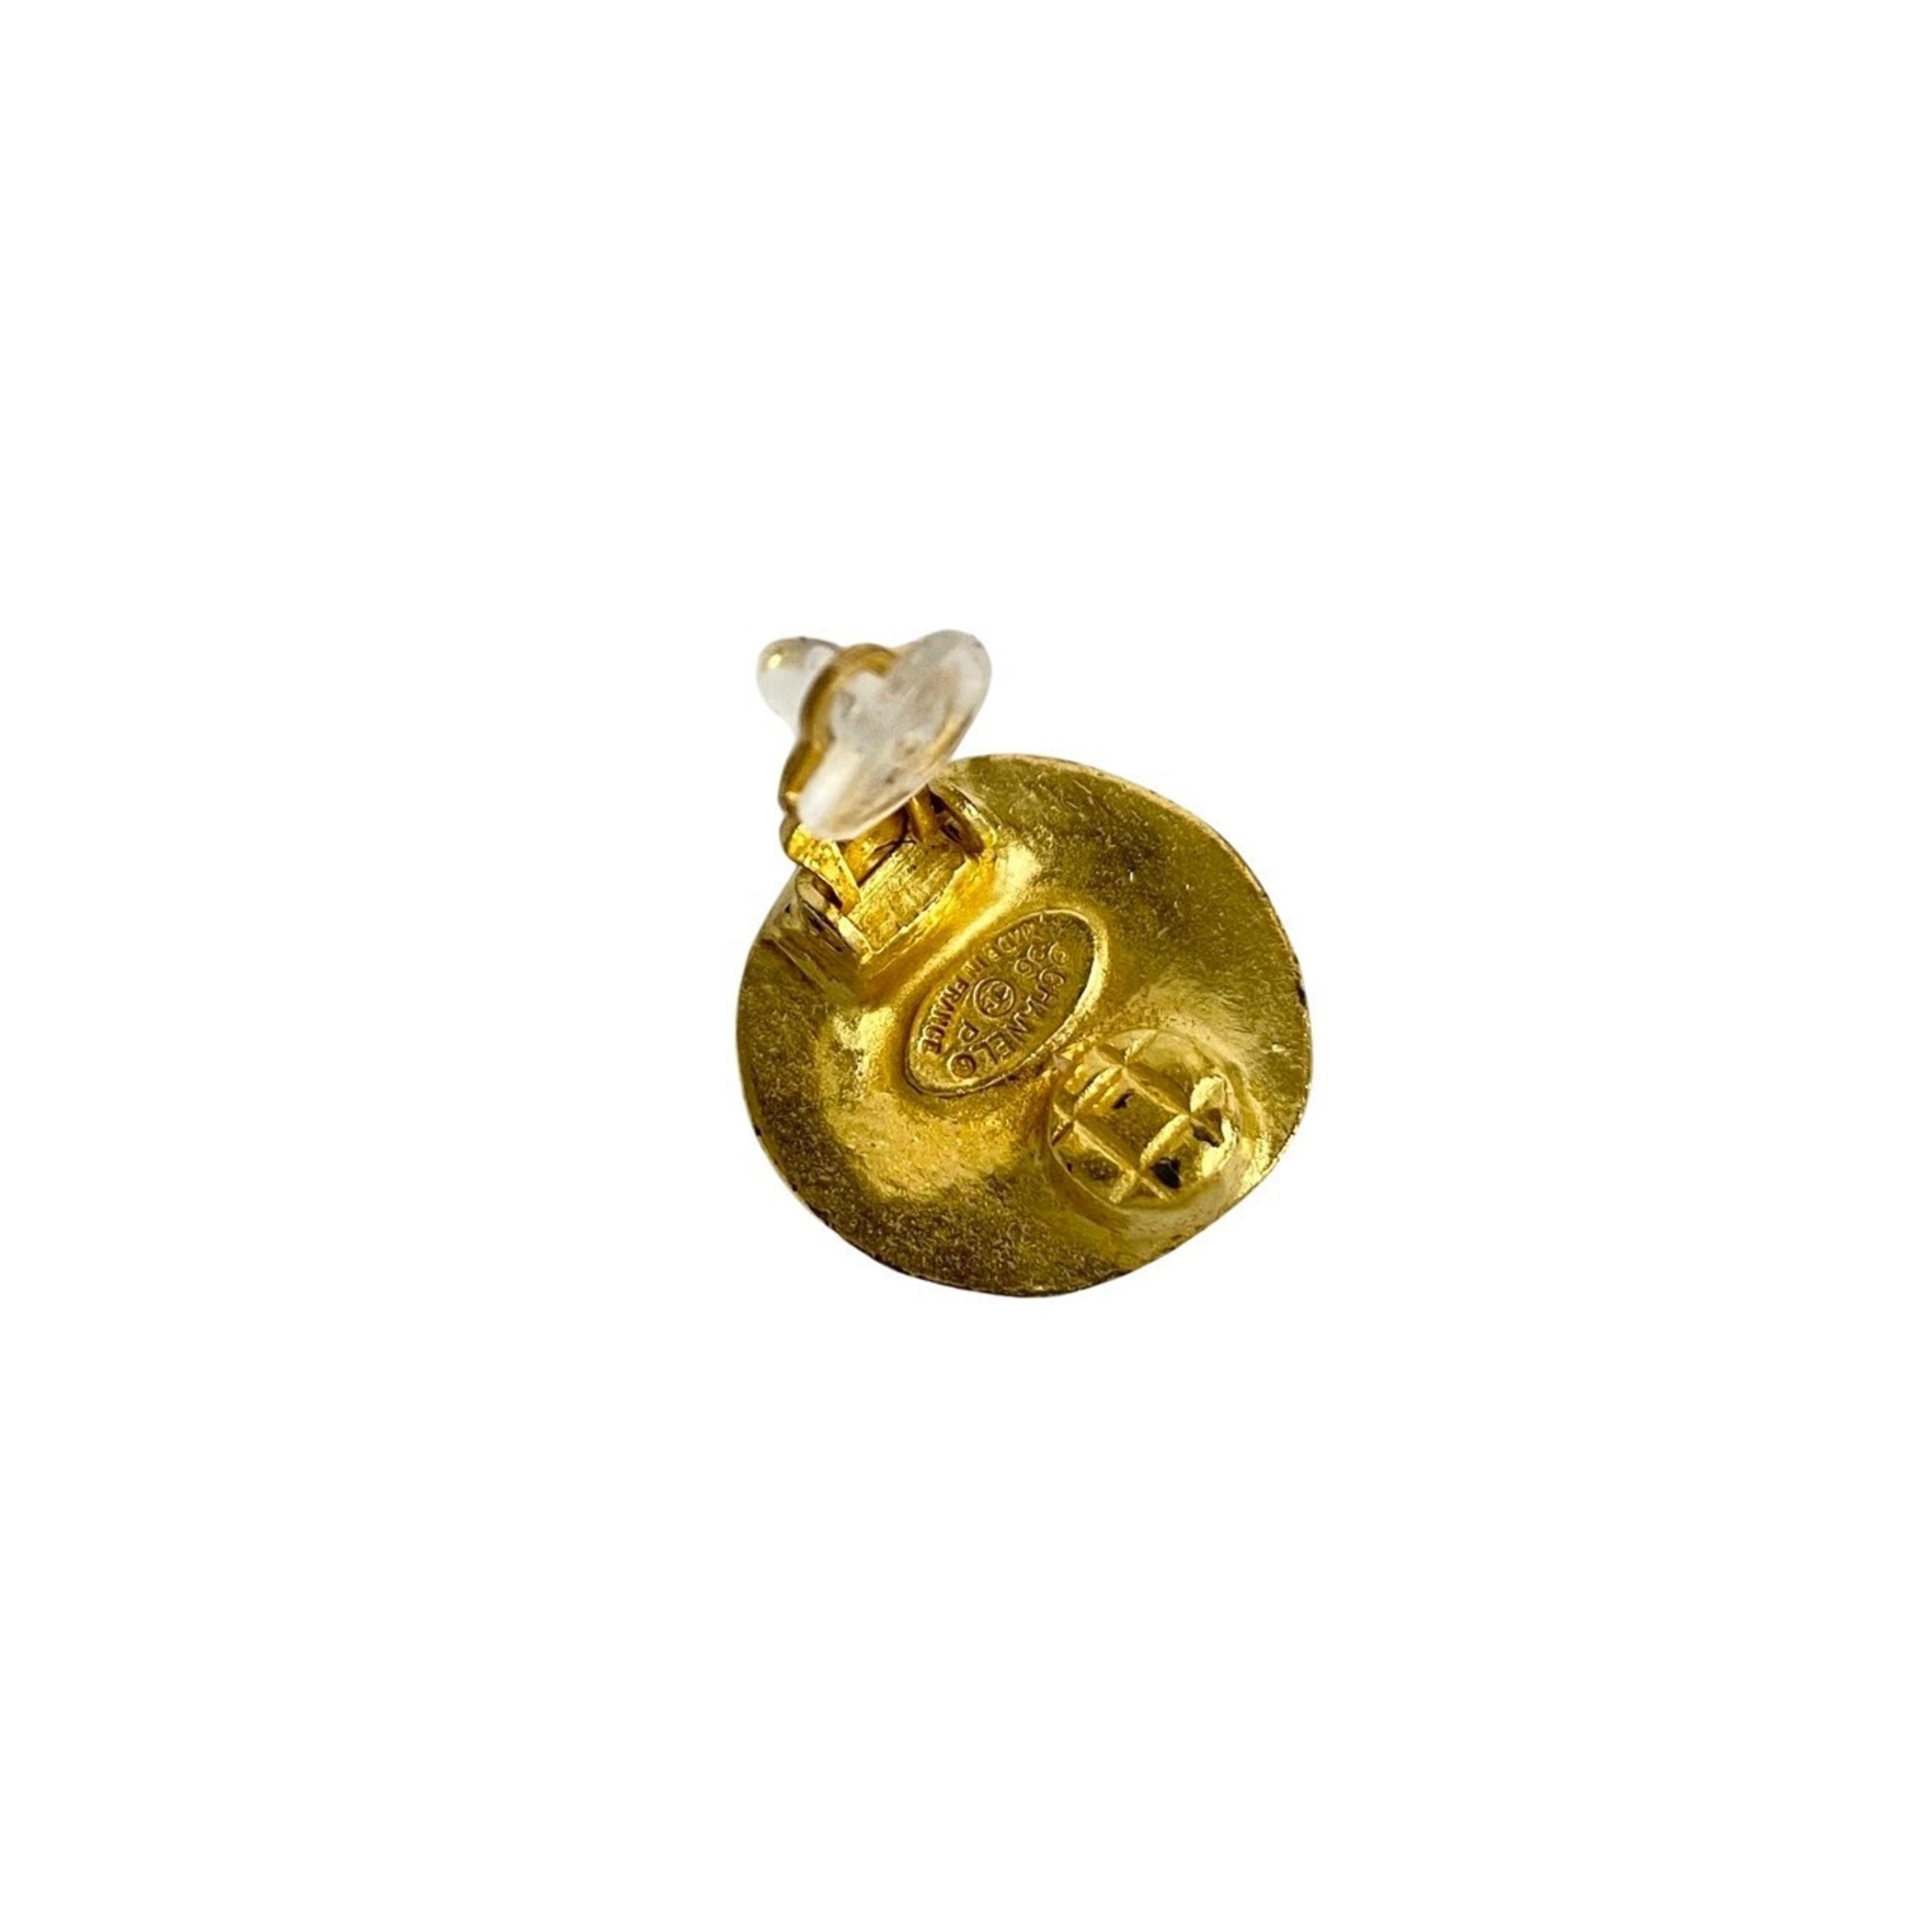 CHANEL 96F Coco Mark Motif Earrings Ear Cuff Gold